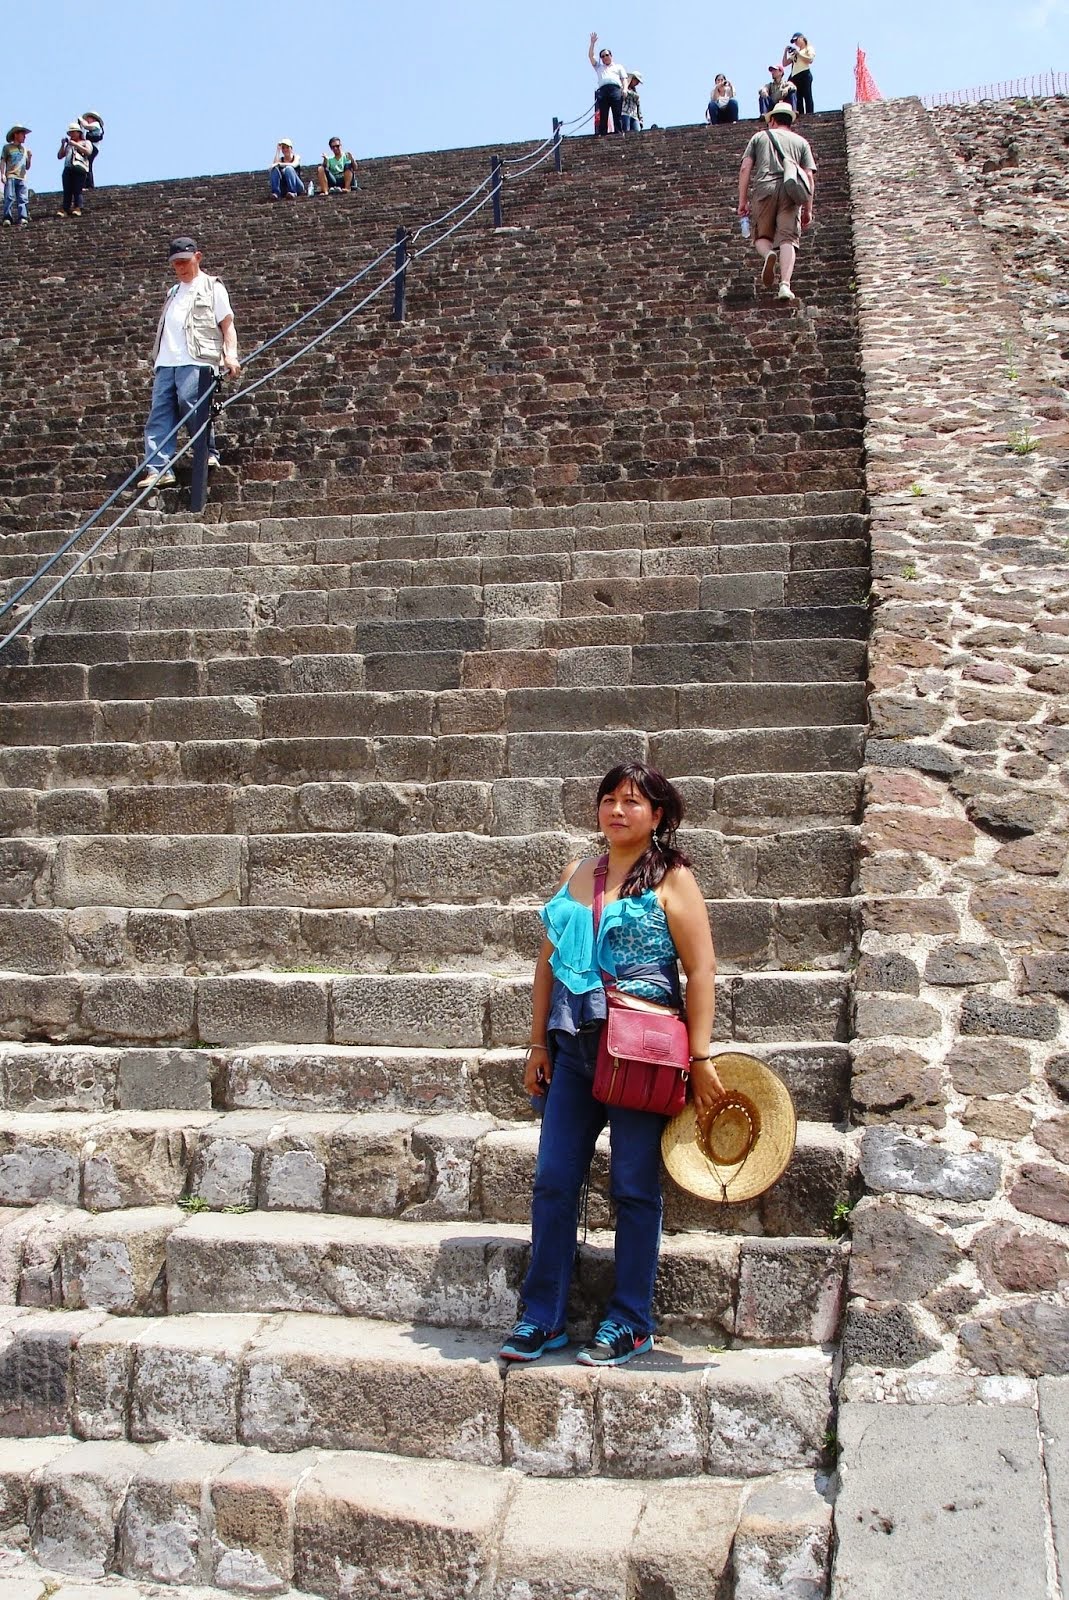 En las Pirámides de Teotihuacán, México